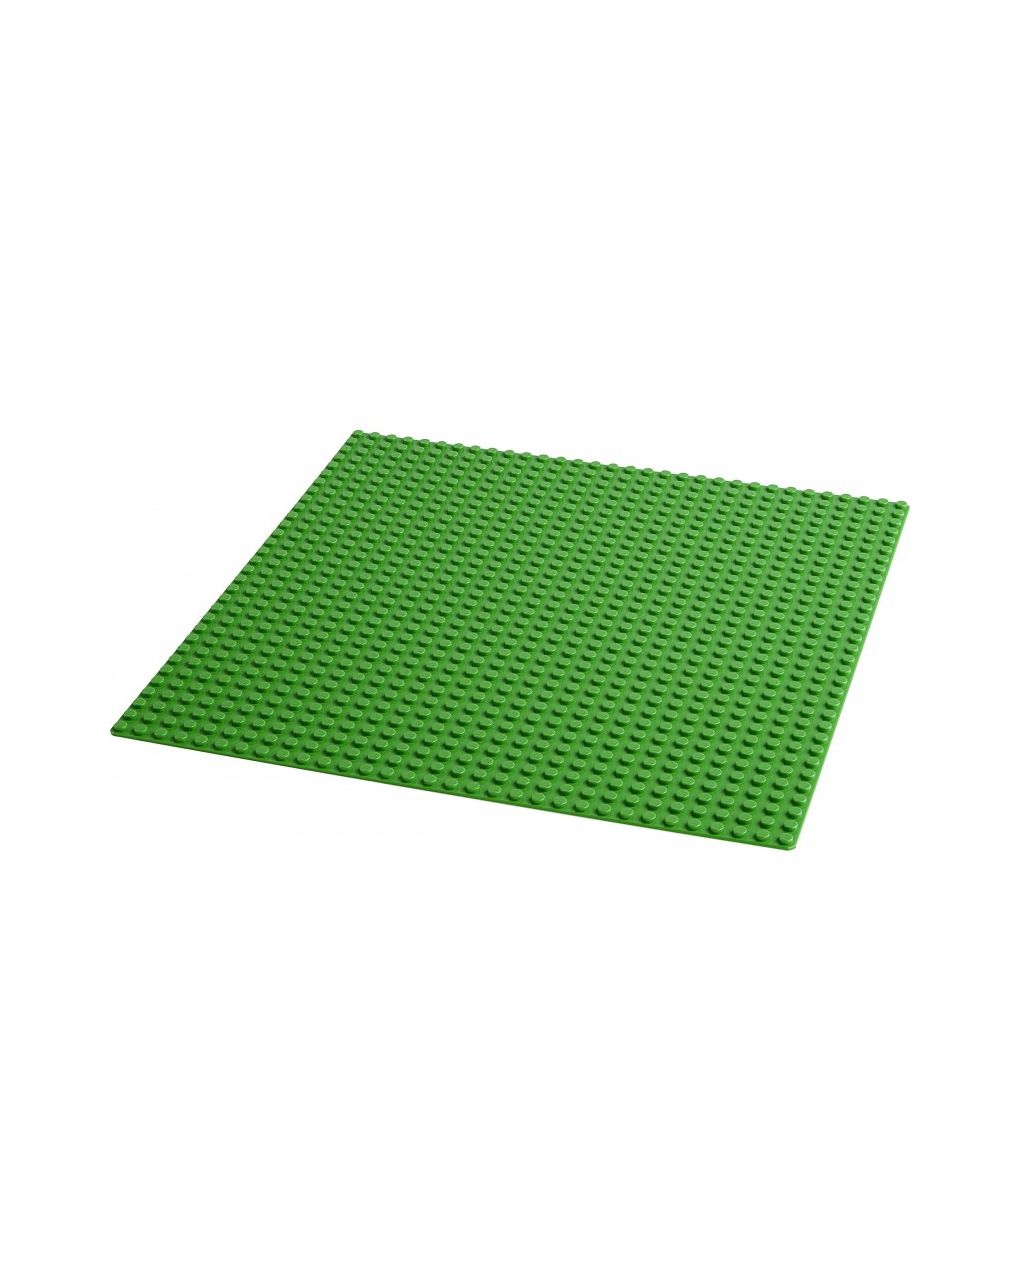 Lego classic - base verde - 11023 - LEGO